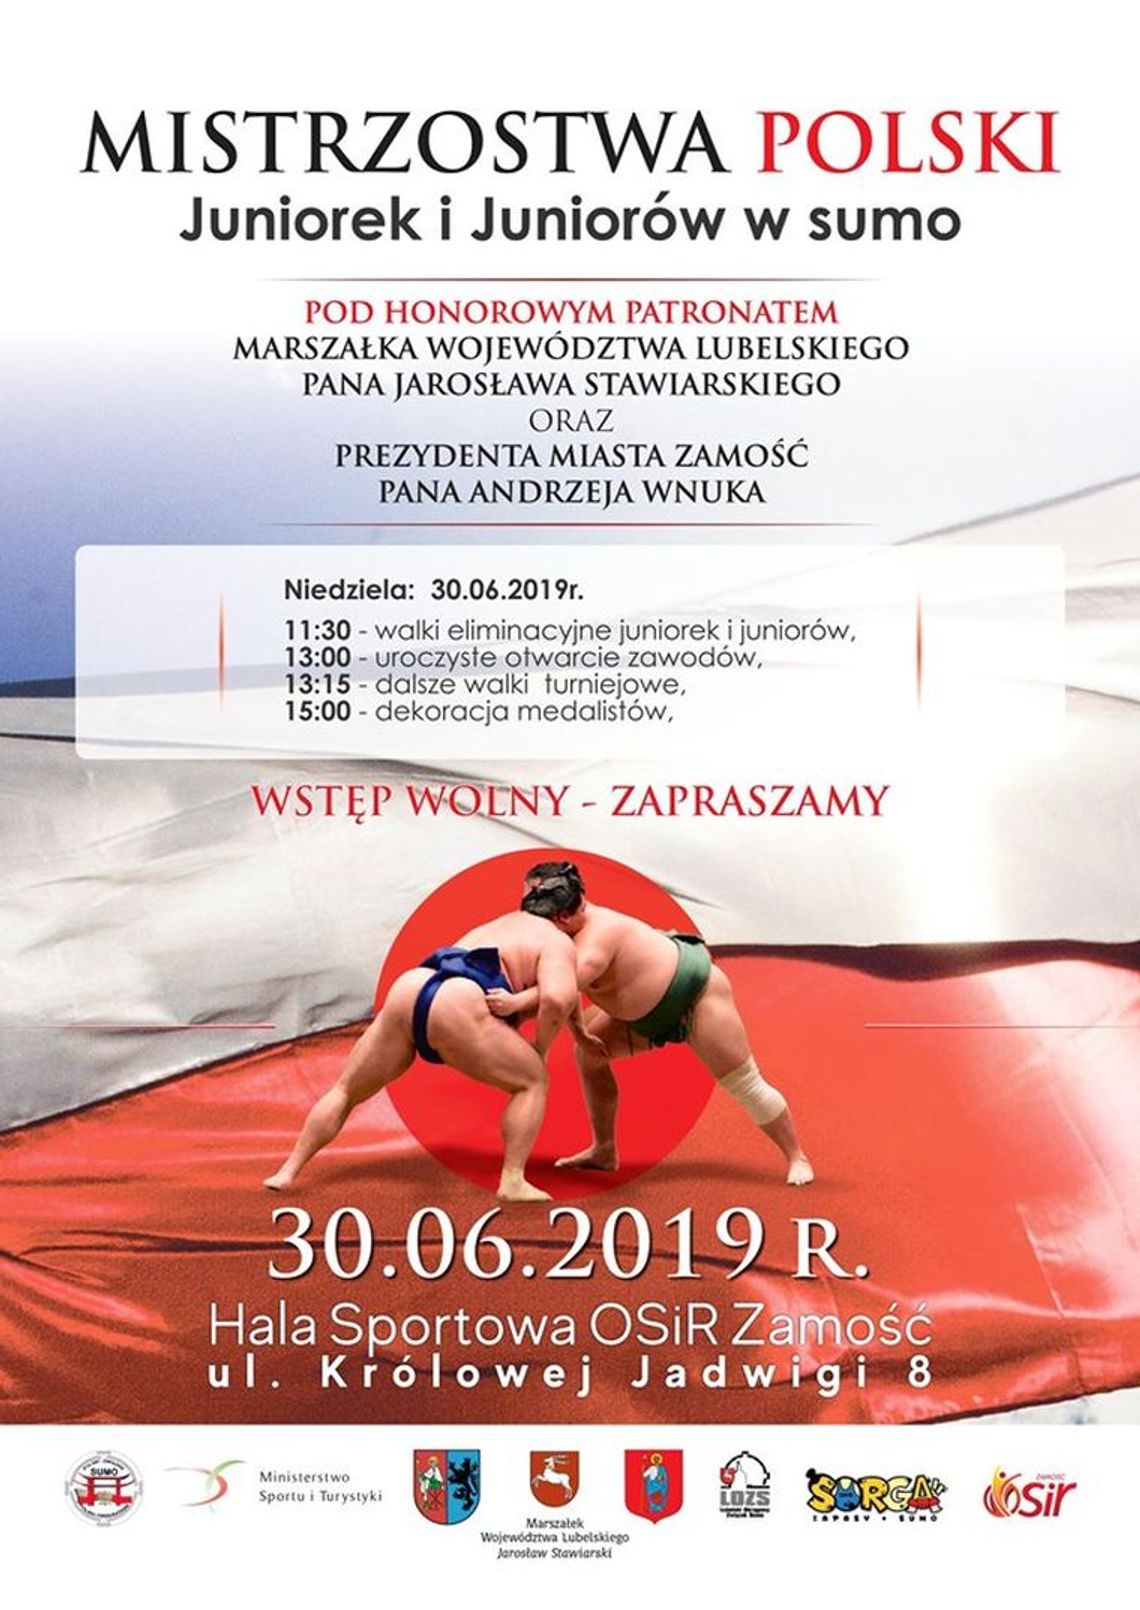 Mistrzostwa Polski Juniorów i Juniorek w sumo